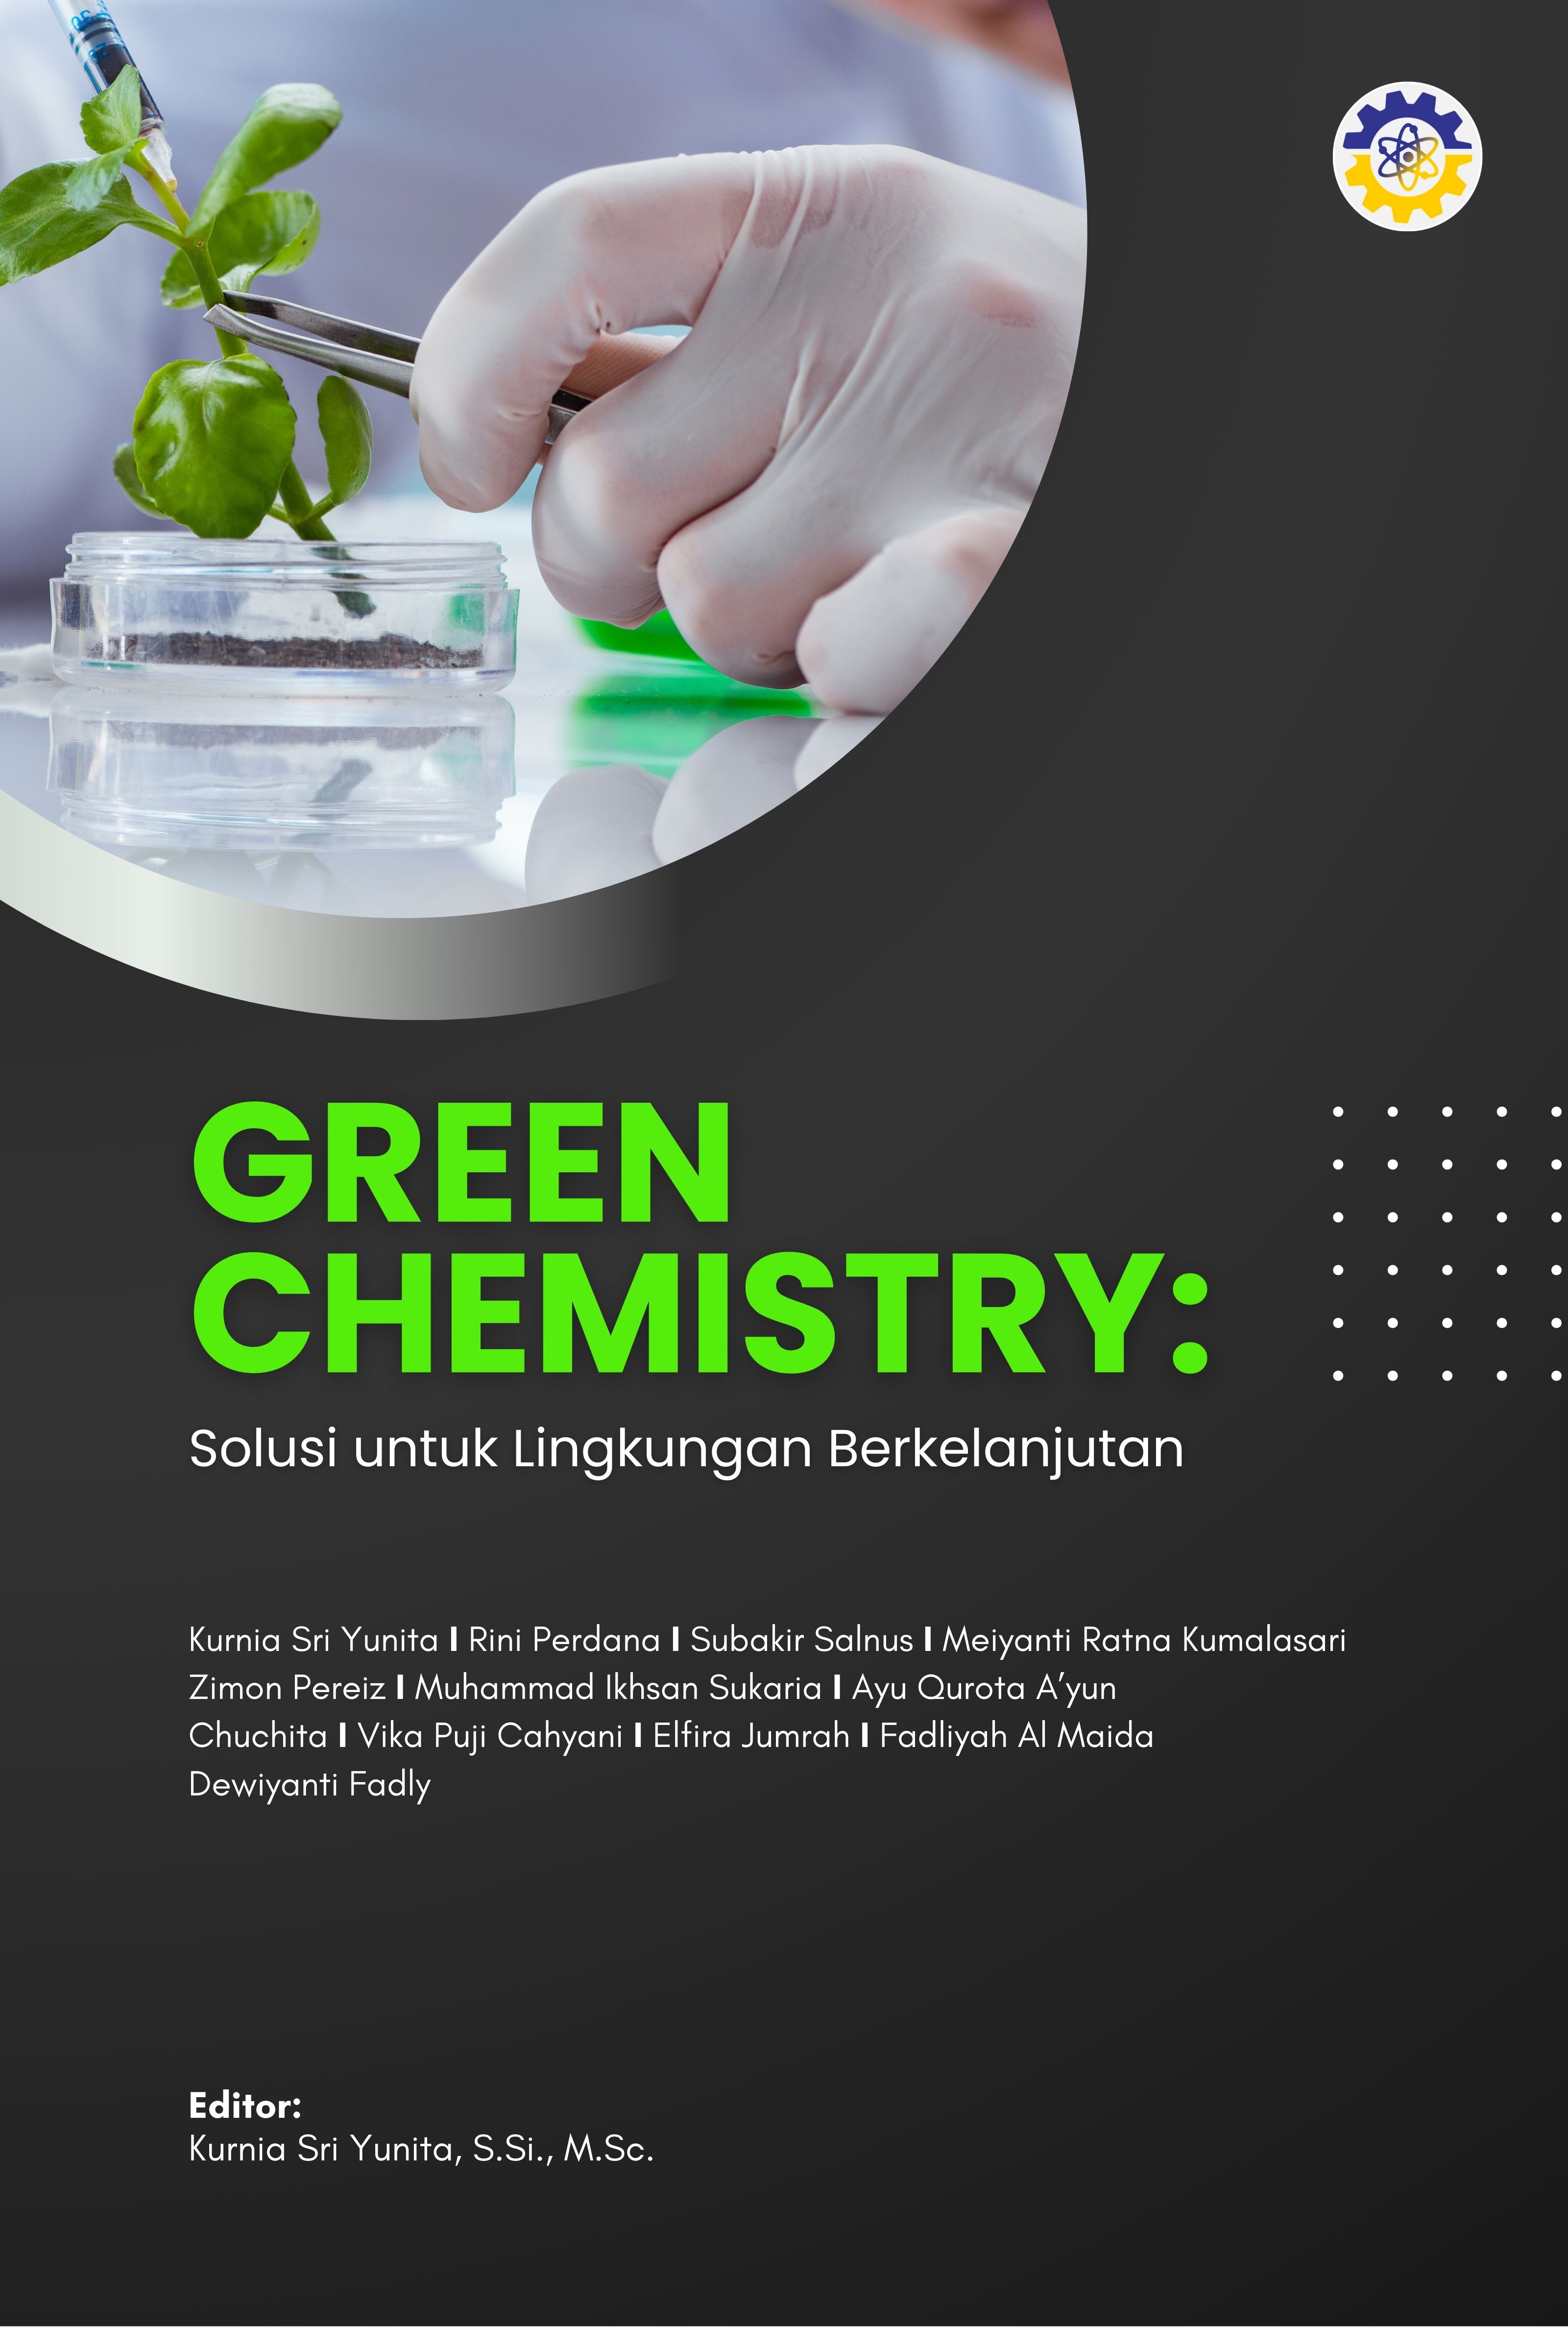 GREEN CHEMISTRY: Solusi untuk Lingkungan Berkelanjutan